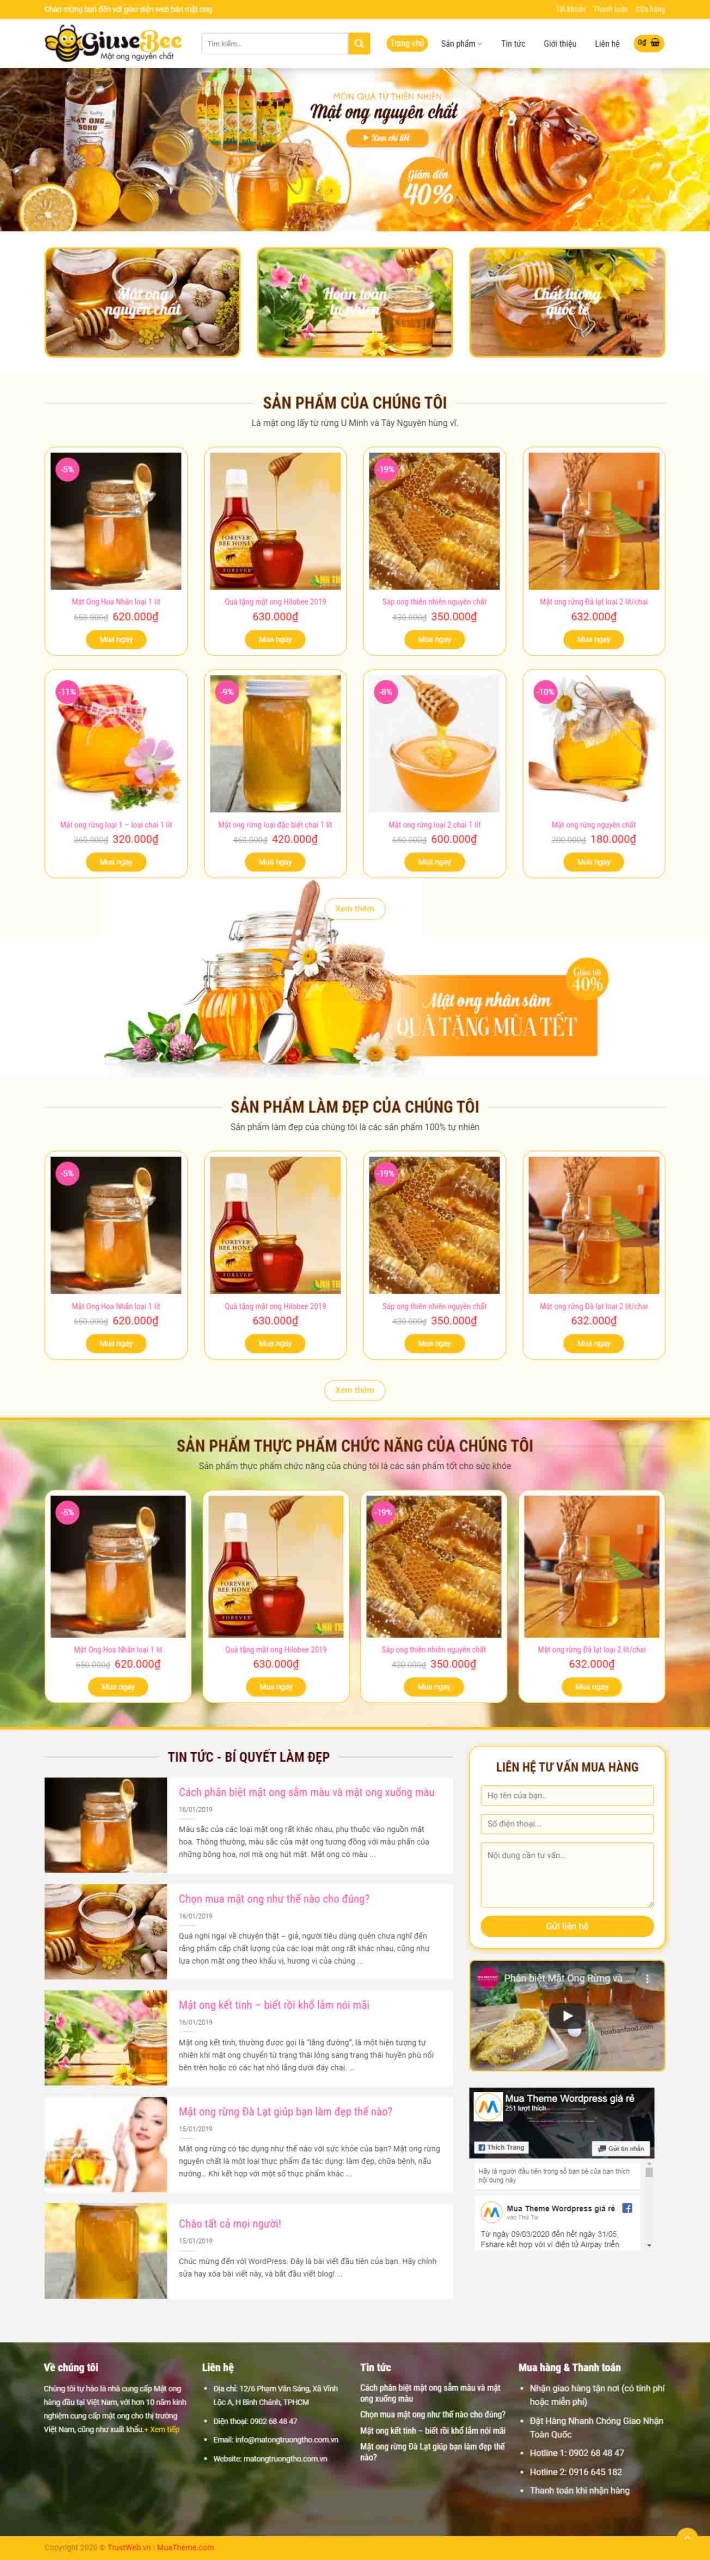 Mẫu giao diện thiết kế website bán hàng mật ong